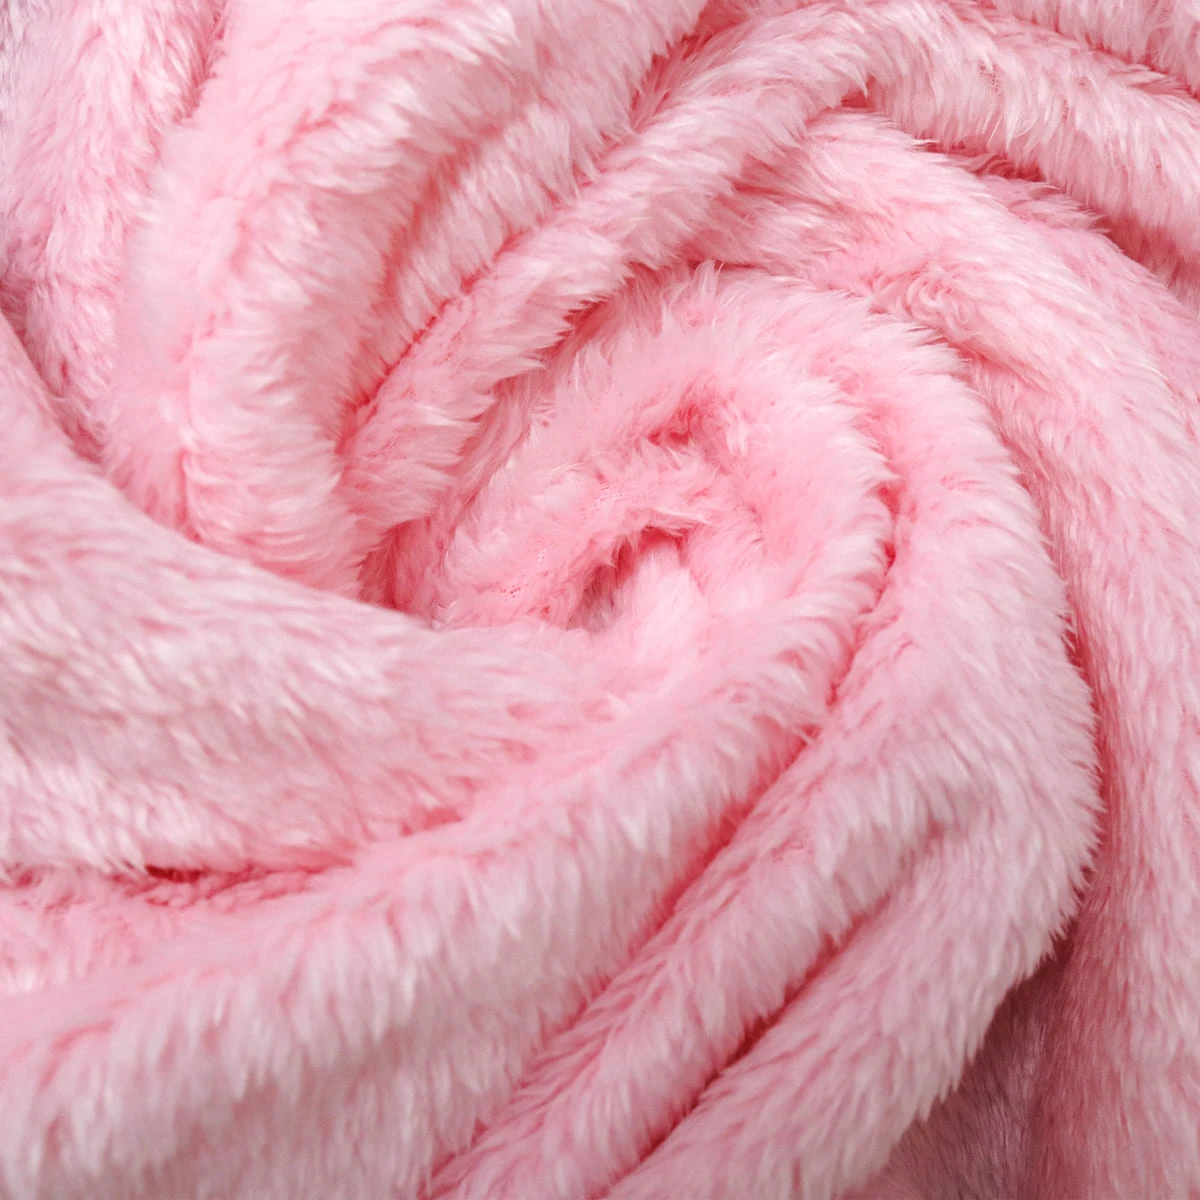 Rabbit Plush Pillow Blanket (Pink)